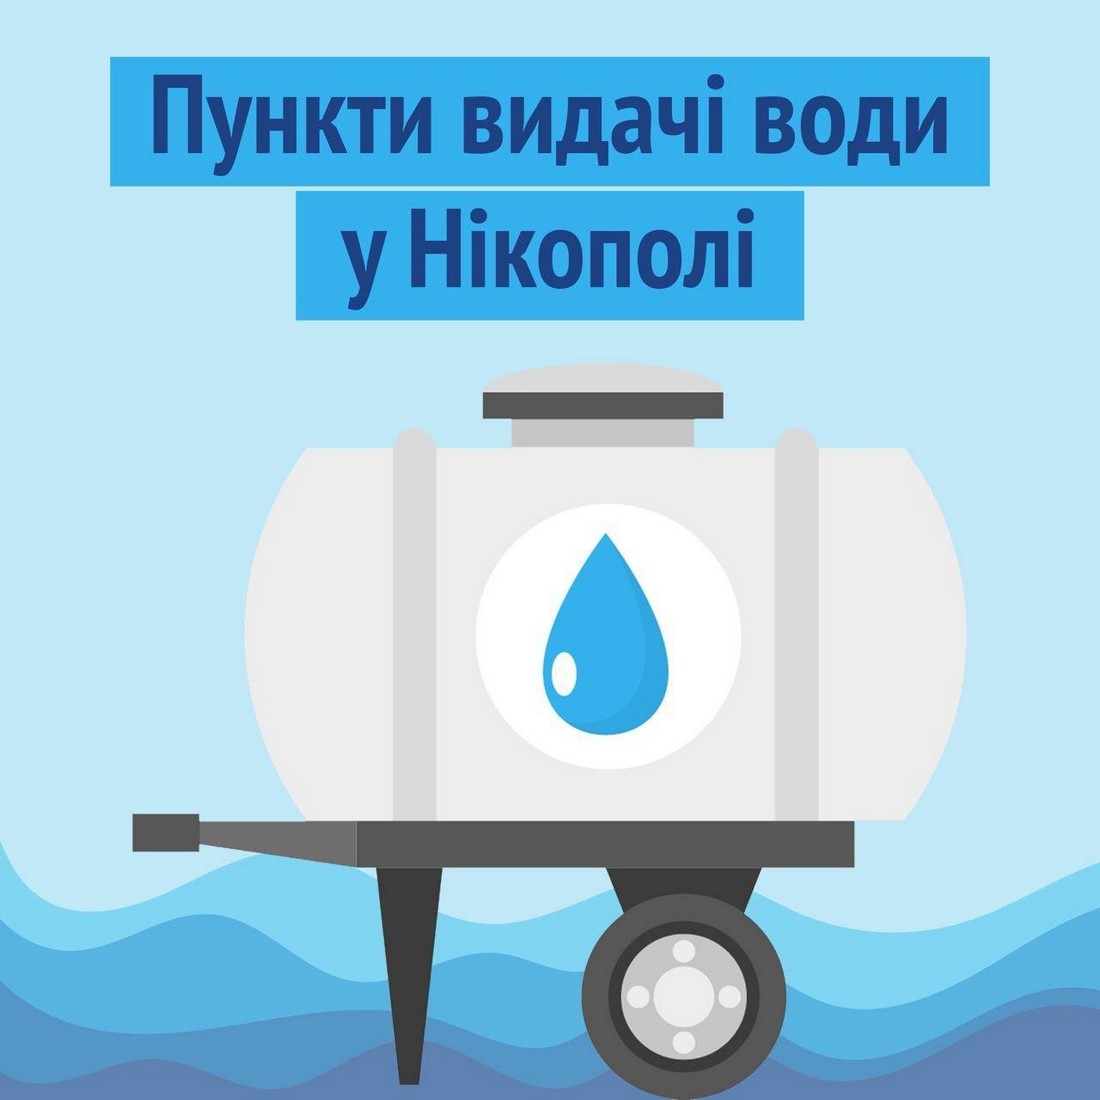 У Нікополі організовано 21 пункт видачі води: як вони працюватимуть